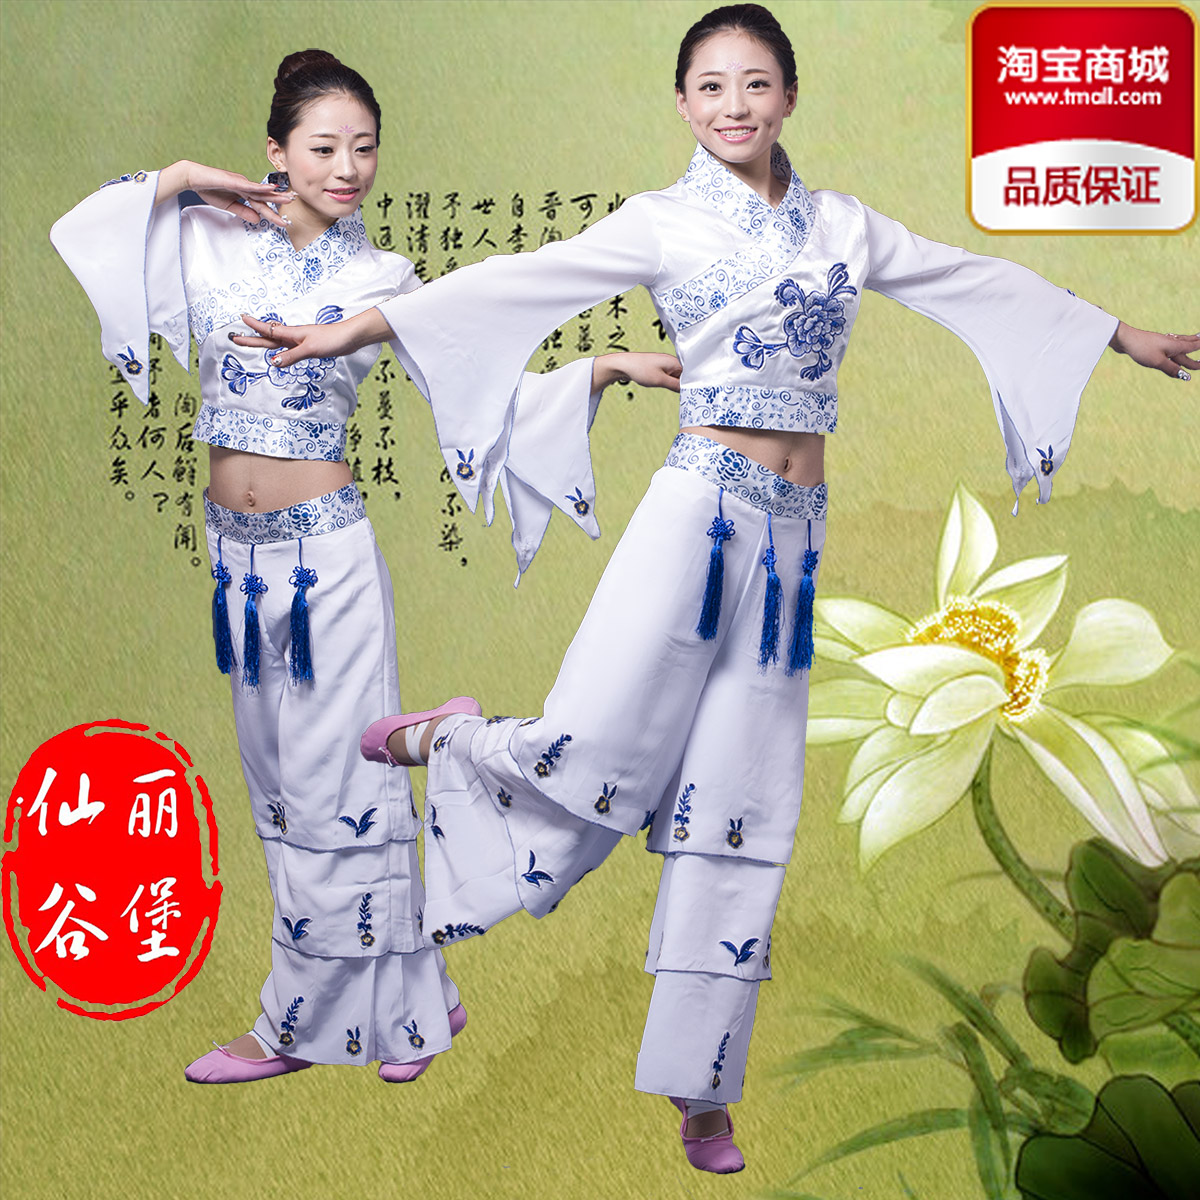 【今日特卖】2015新款古典舞服装青花瓷演出